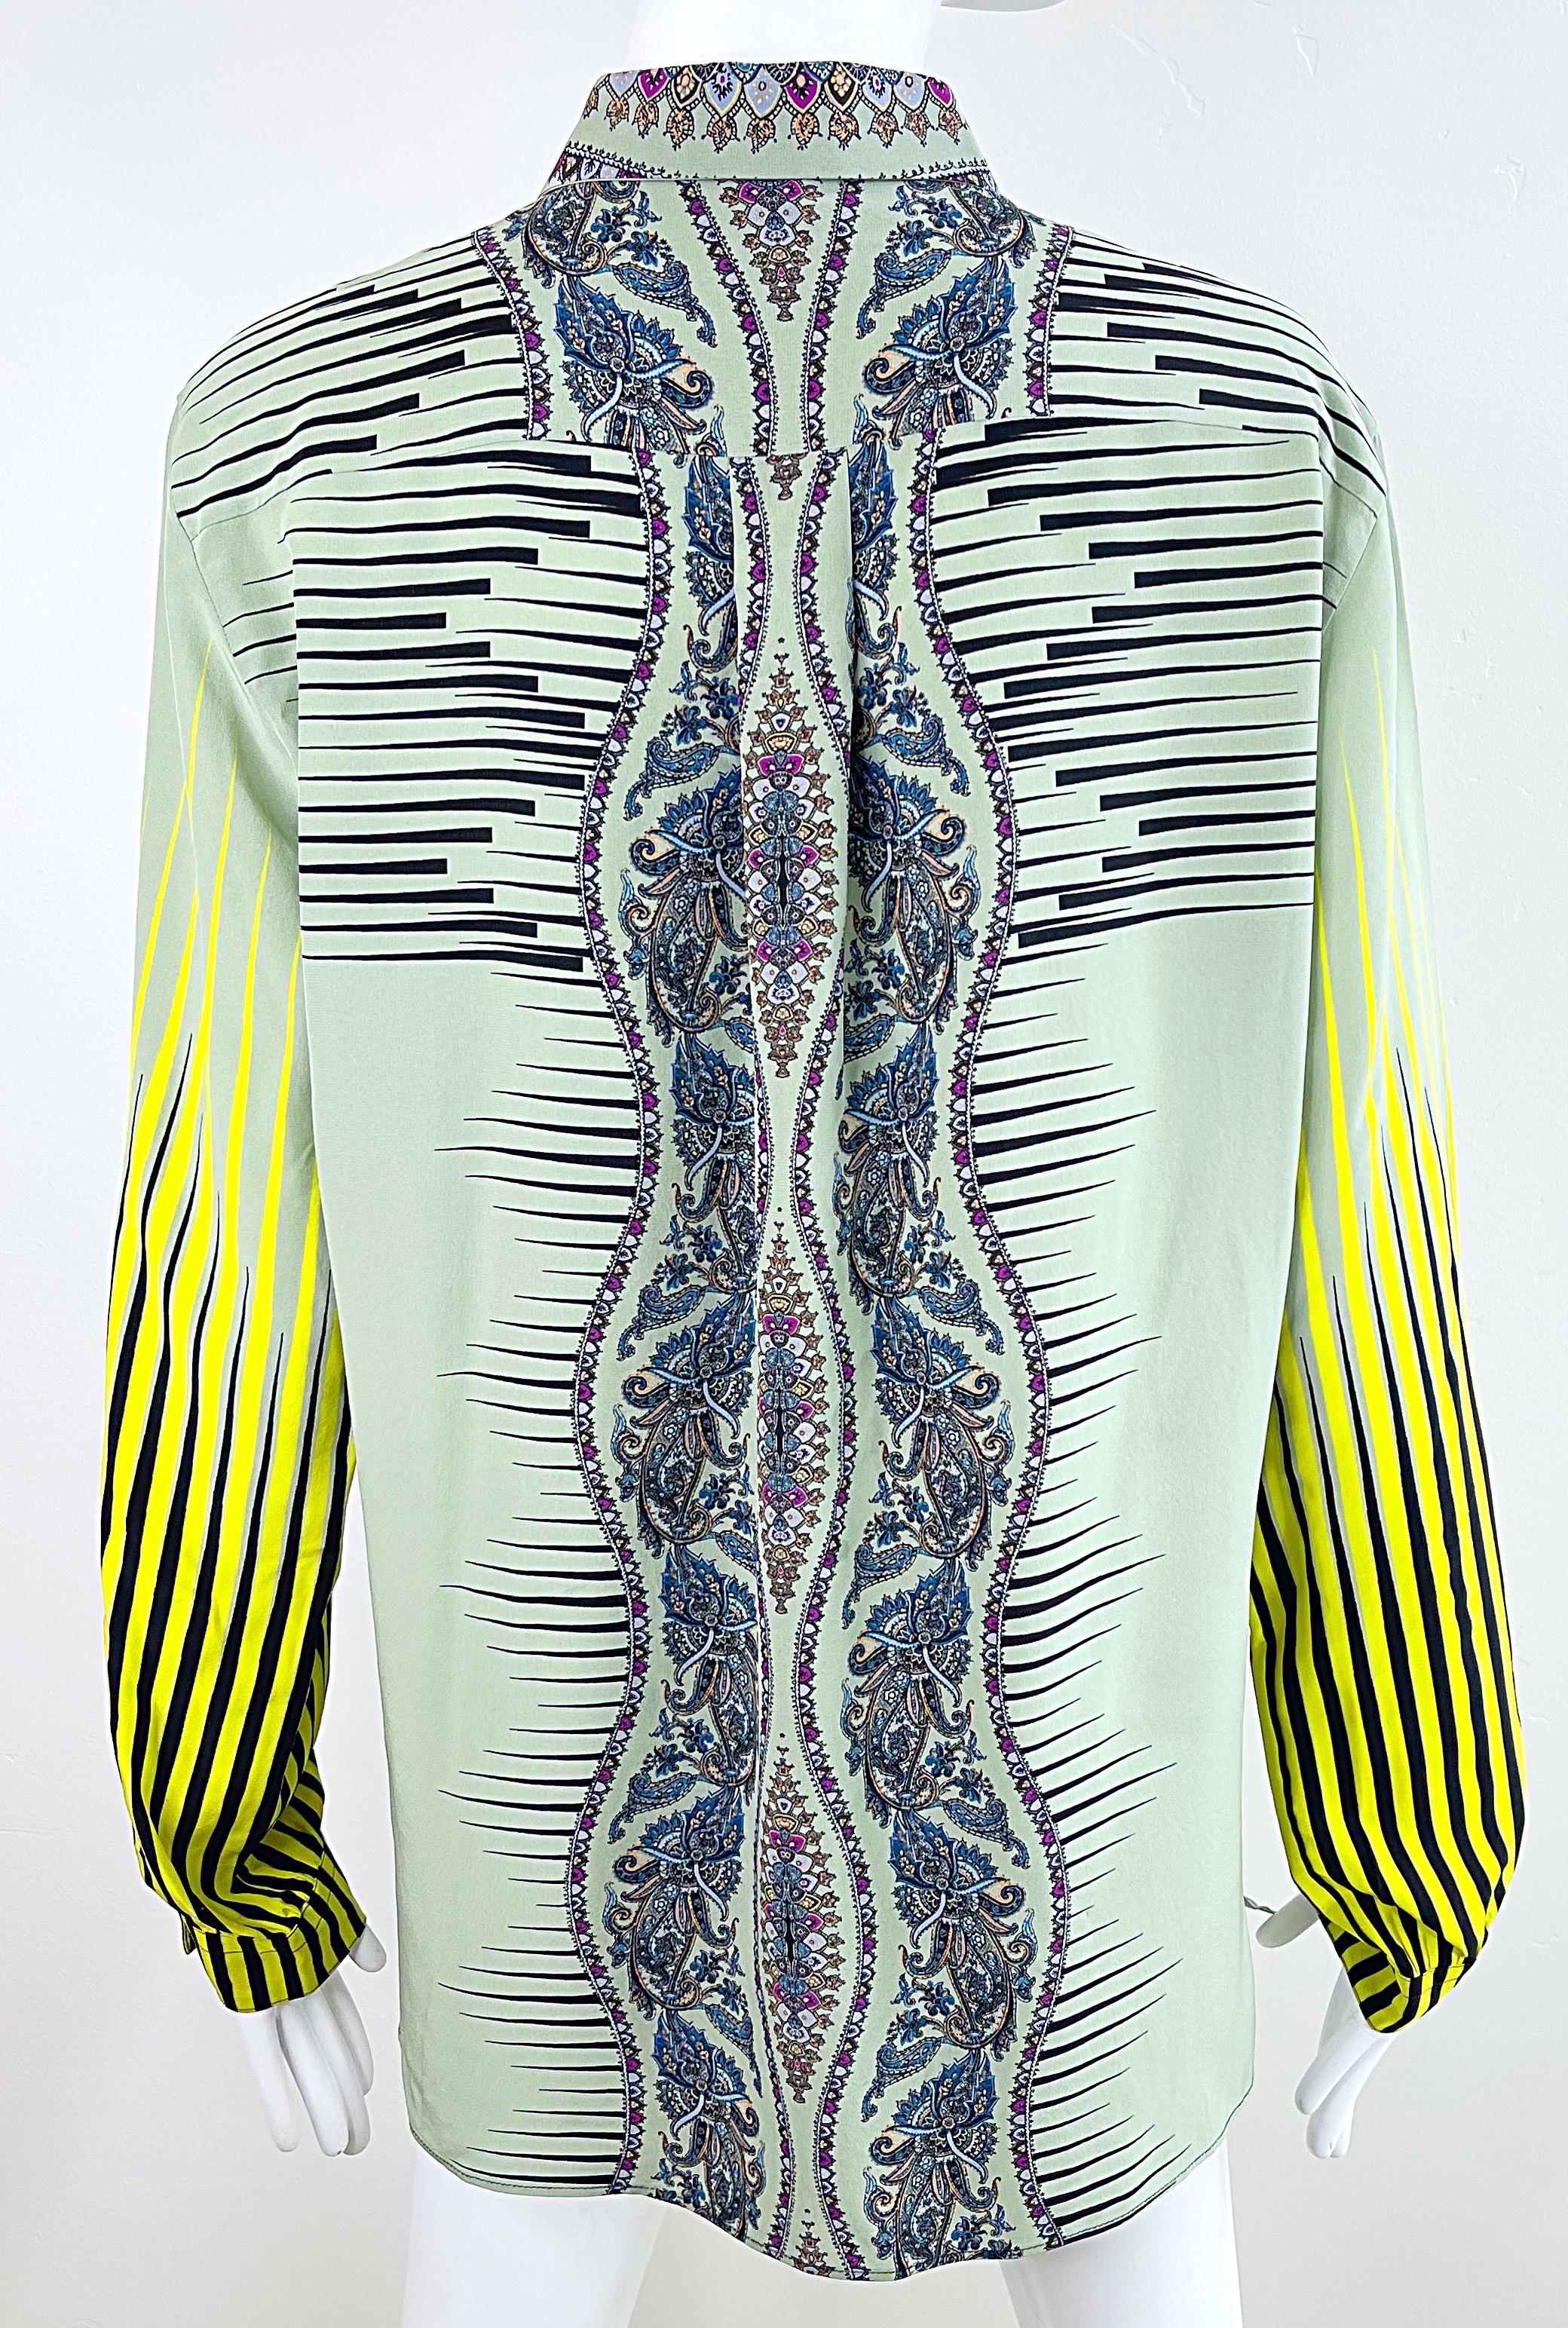 Etro 2000s Femmes Taille 46 / US 10 12 Colorful Paisley Striped Y2K Silk Blouse  en vente 5